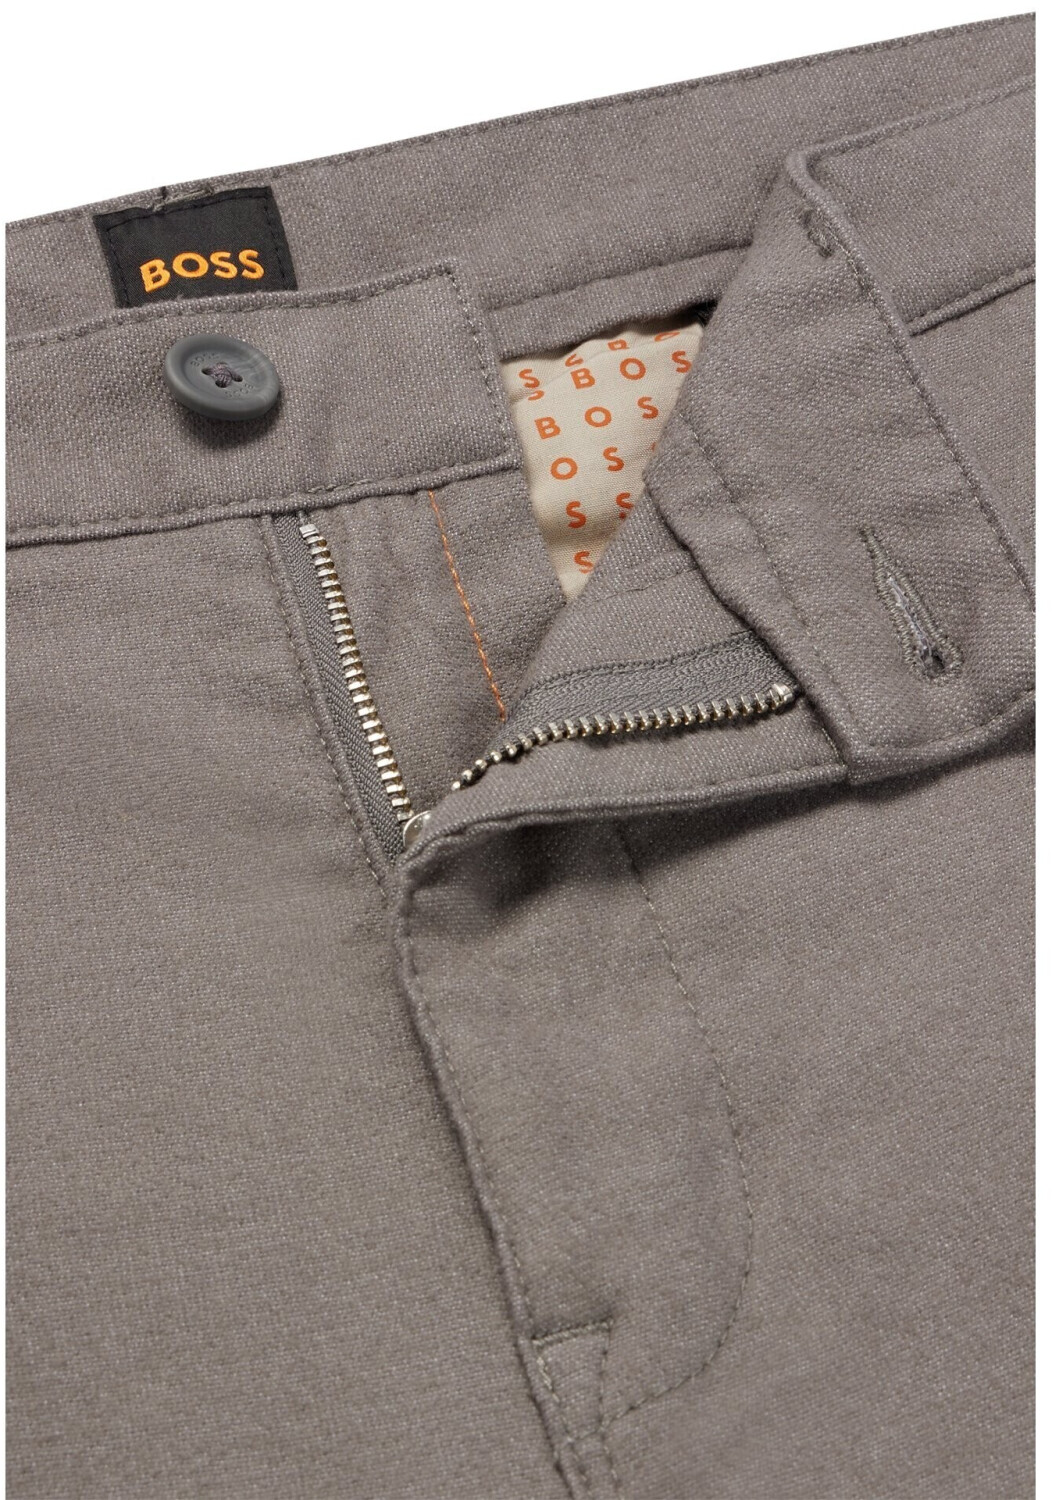 Hugo Boss Schino-Slim-O (50483723030) grey ab 64,40 € | Preisvergleich bei